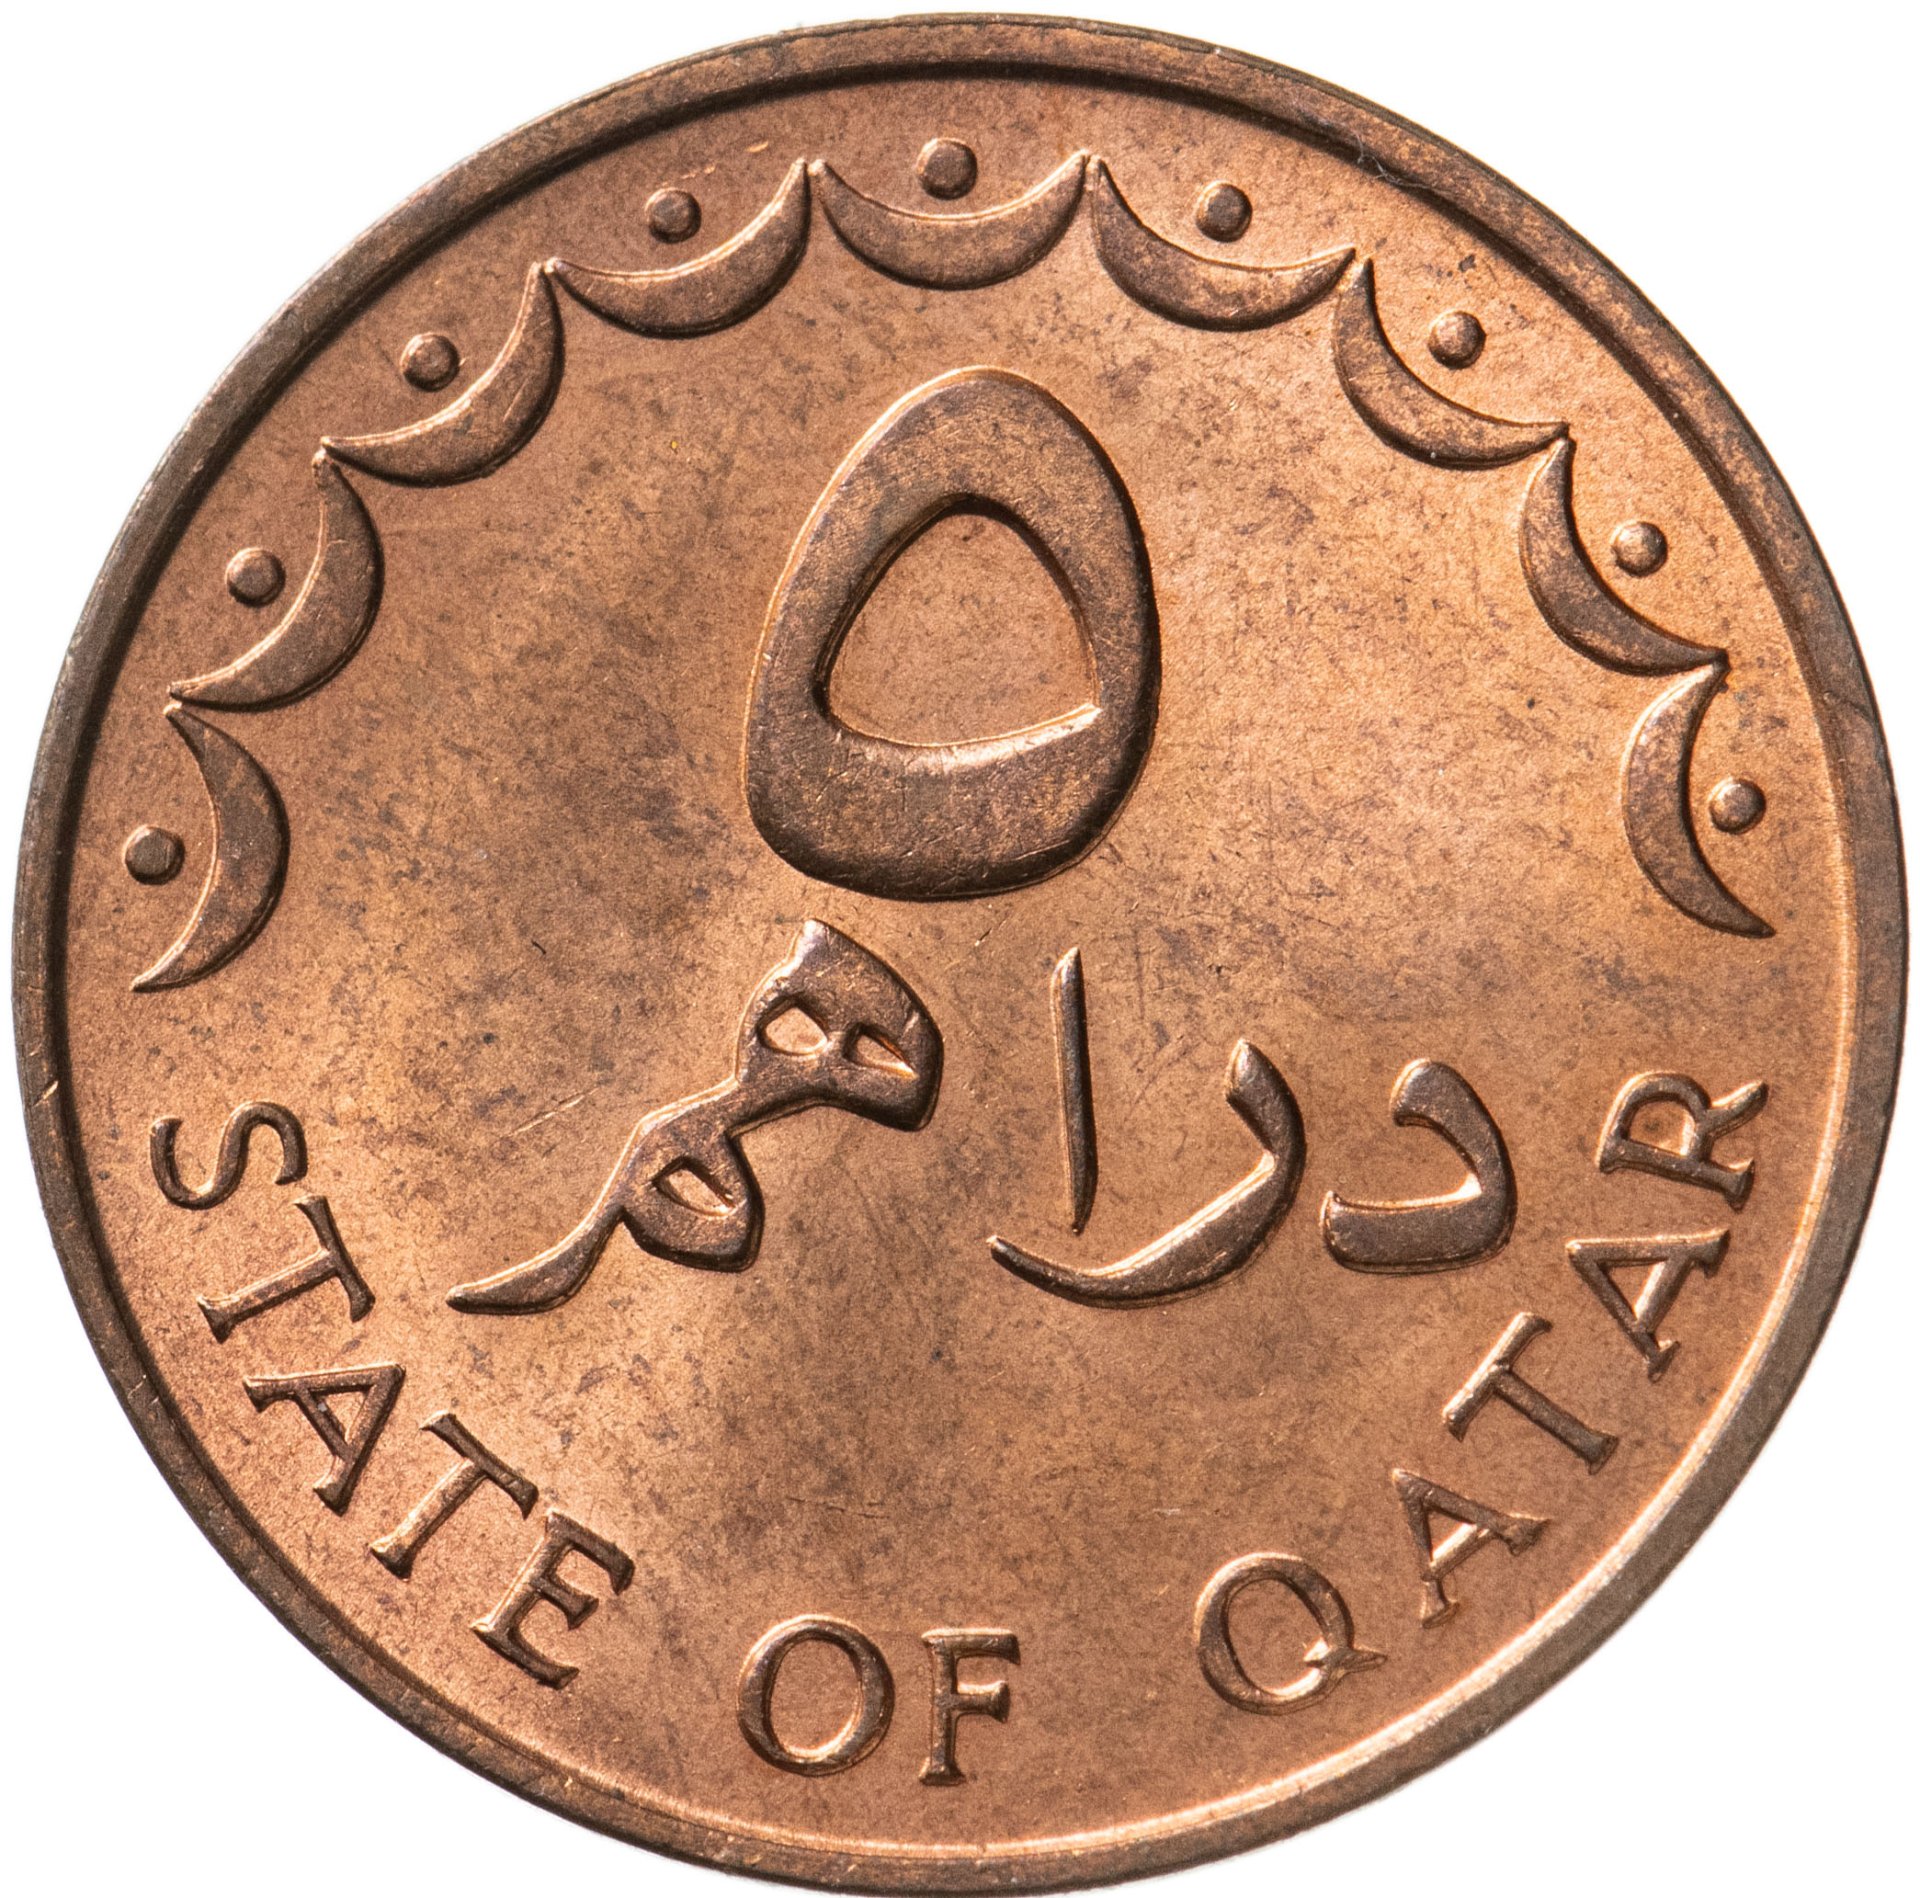 150 000 дирхам. Монеты Катара. Монеты Катара каталог. Миллион марокканских дирхам.